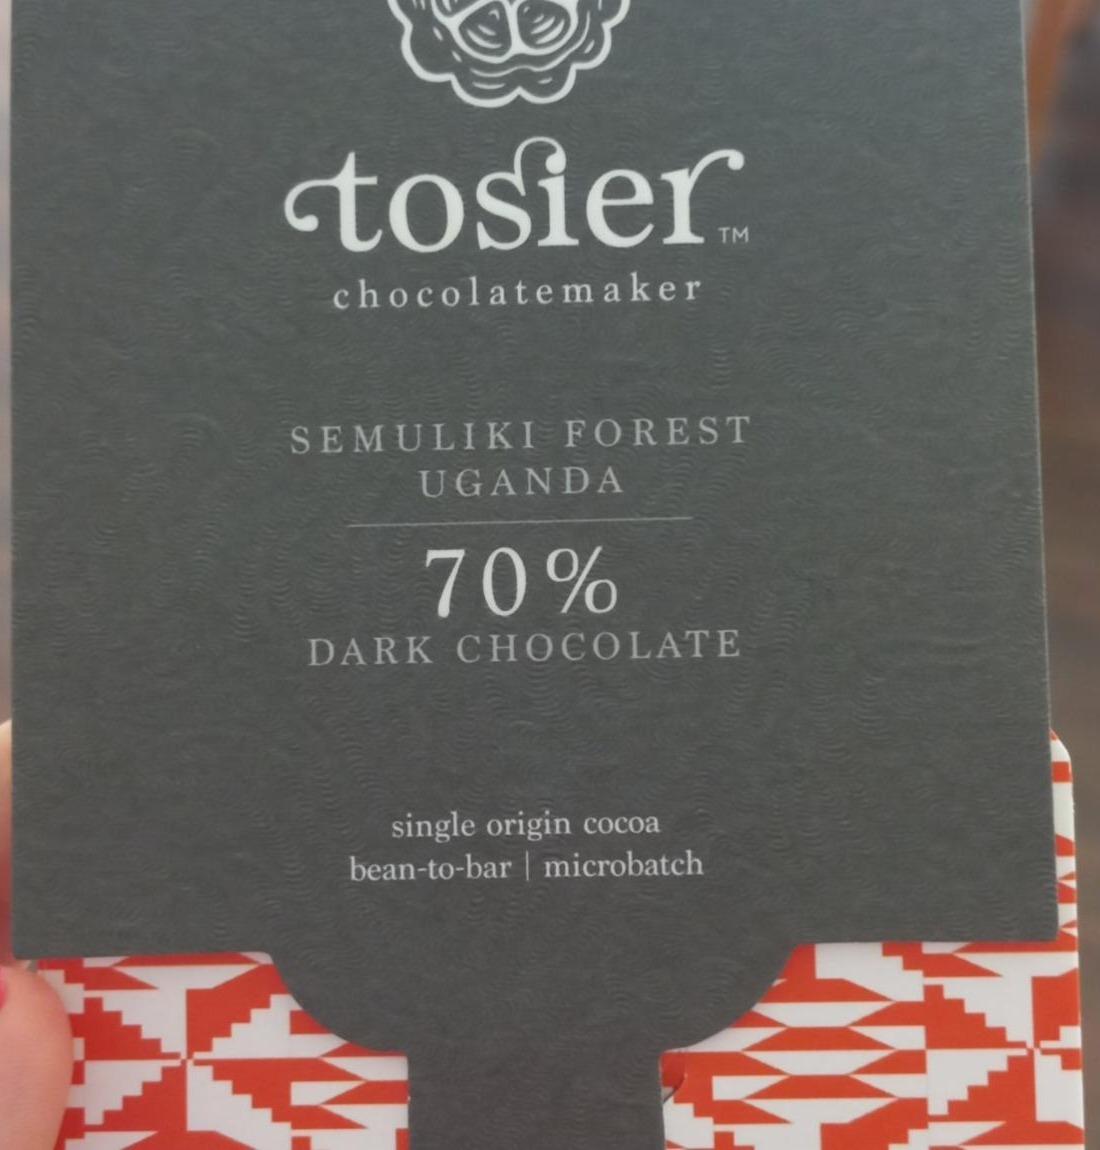 Fotografie - 70% Dark Chocolate Tosier Chocolatemaker